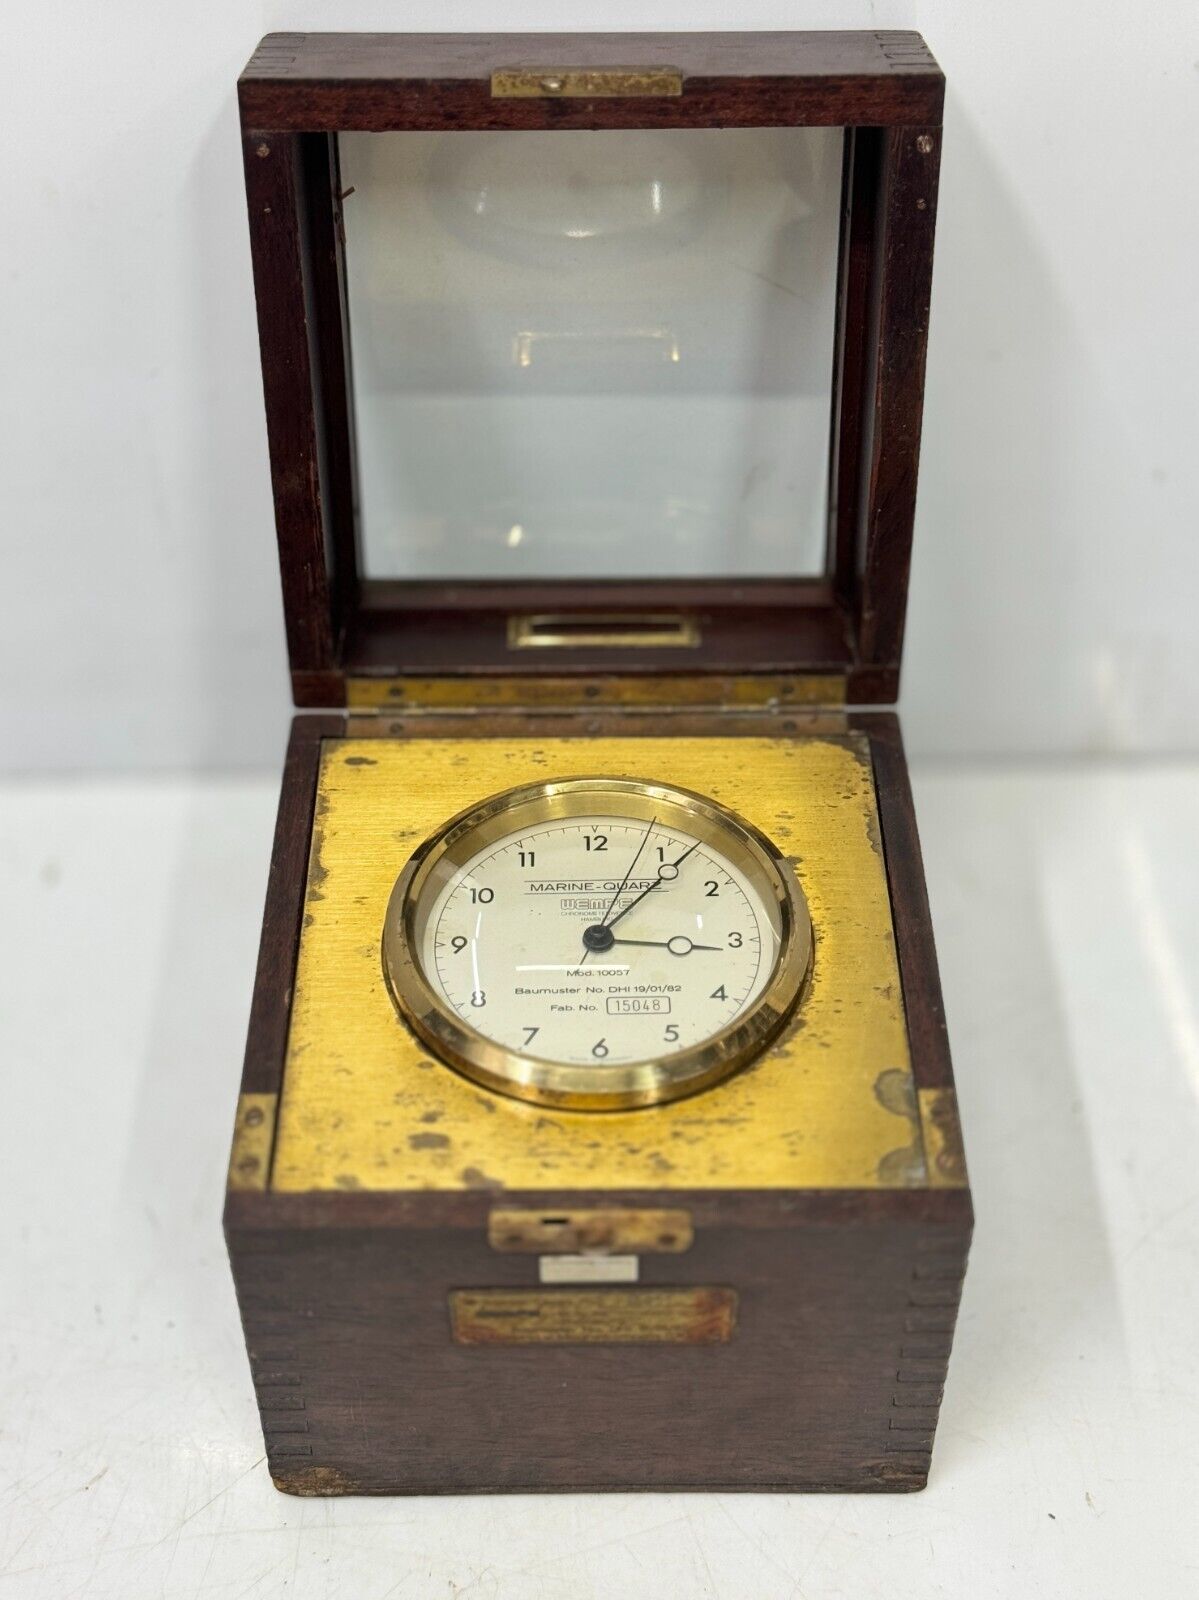 1982 Germany Original Wempe Marine Quartz Old Antique Hainburg Chronometer Clock